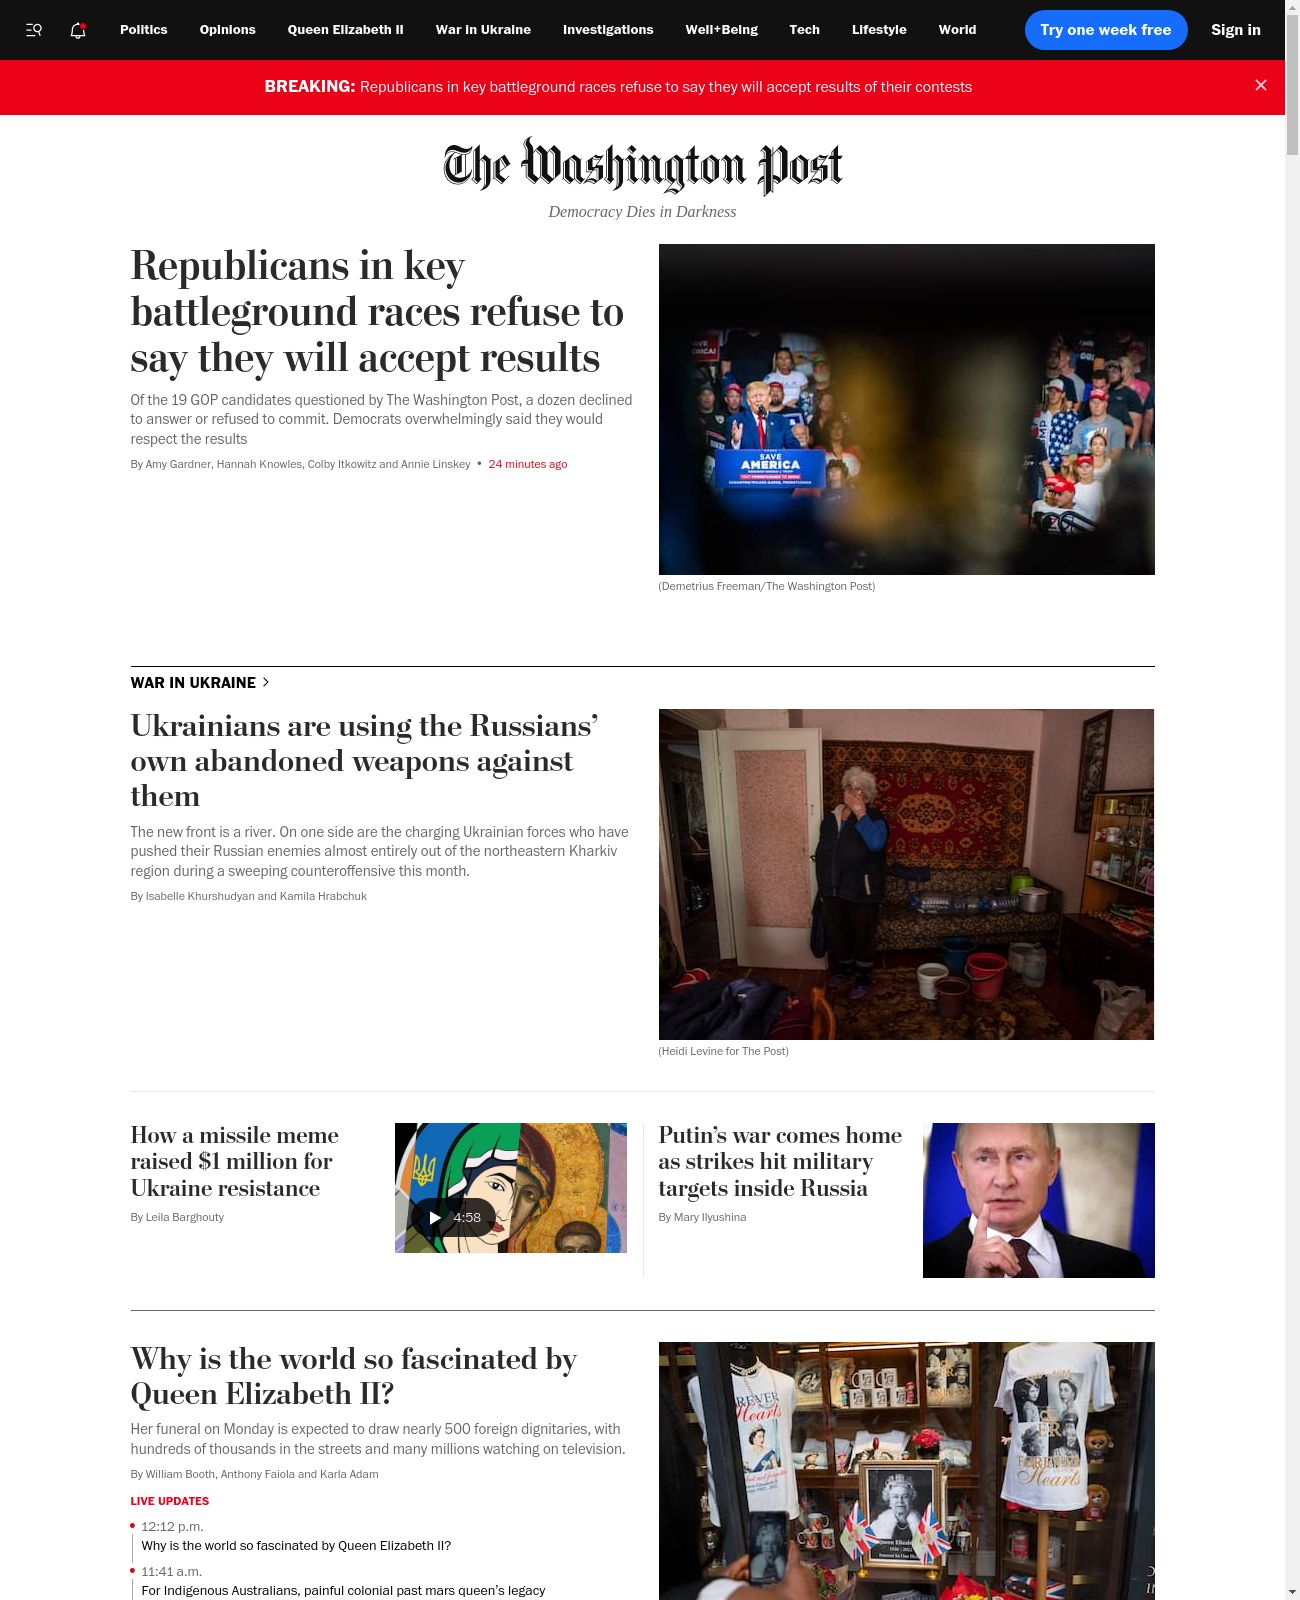 Washington Post at 2022-09-18 13:19:49-04:00 local time